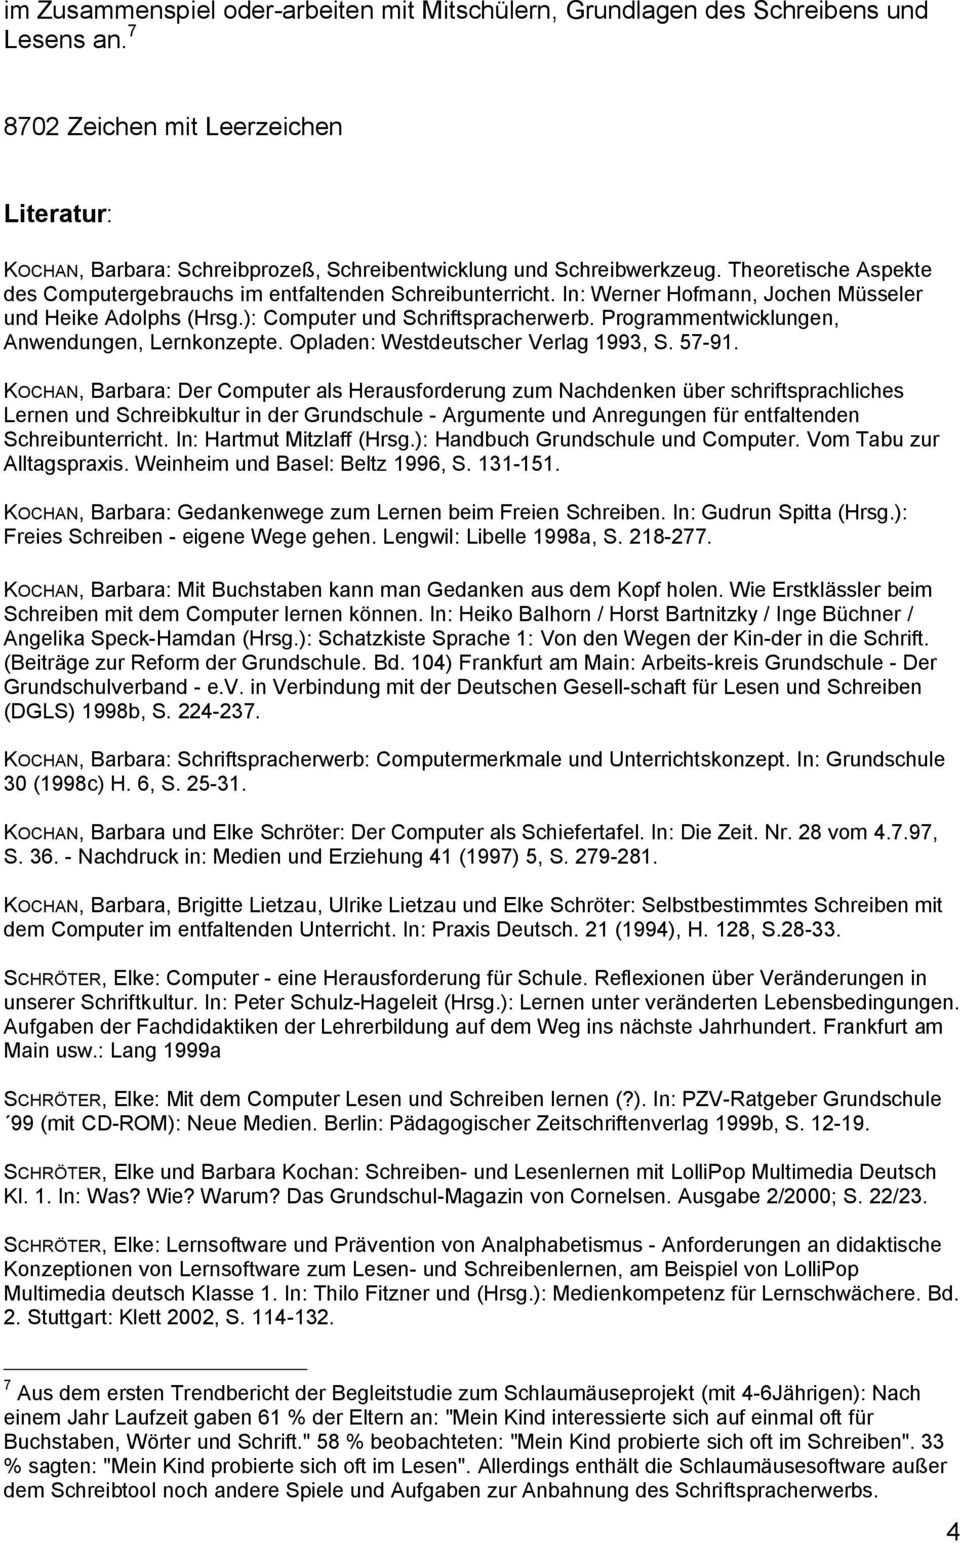 In: Werner Hofmann, Jochen Müsseler und Heike Adolphs (Hrsg.): Computer und Schriftspracherwerb. Programmentwicklungen, Anwendungen, Lernkonzepte. Opladen: Westdeutscher Verlag 1993, S. 57-91.